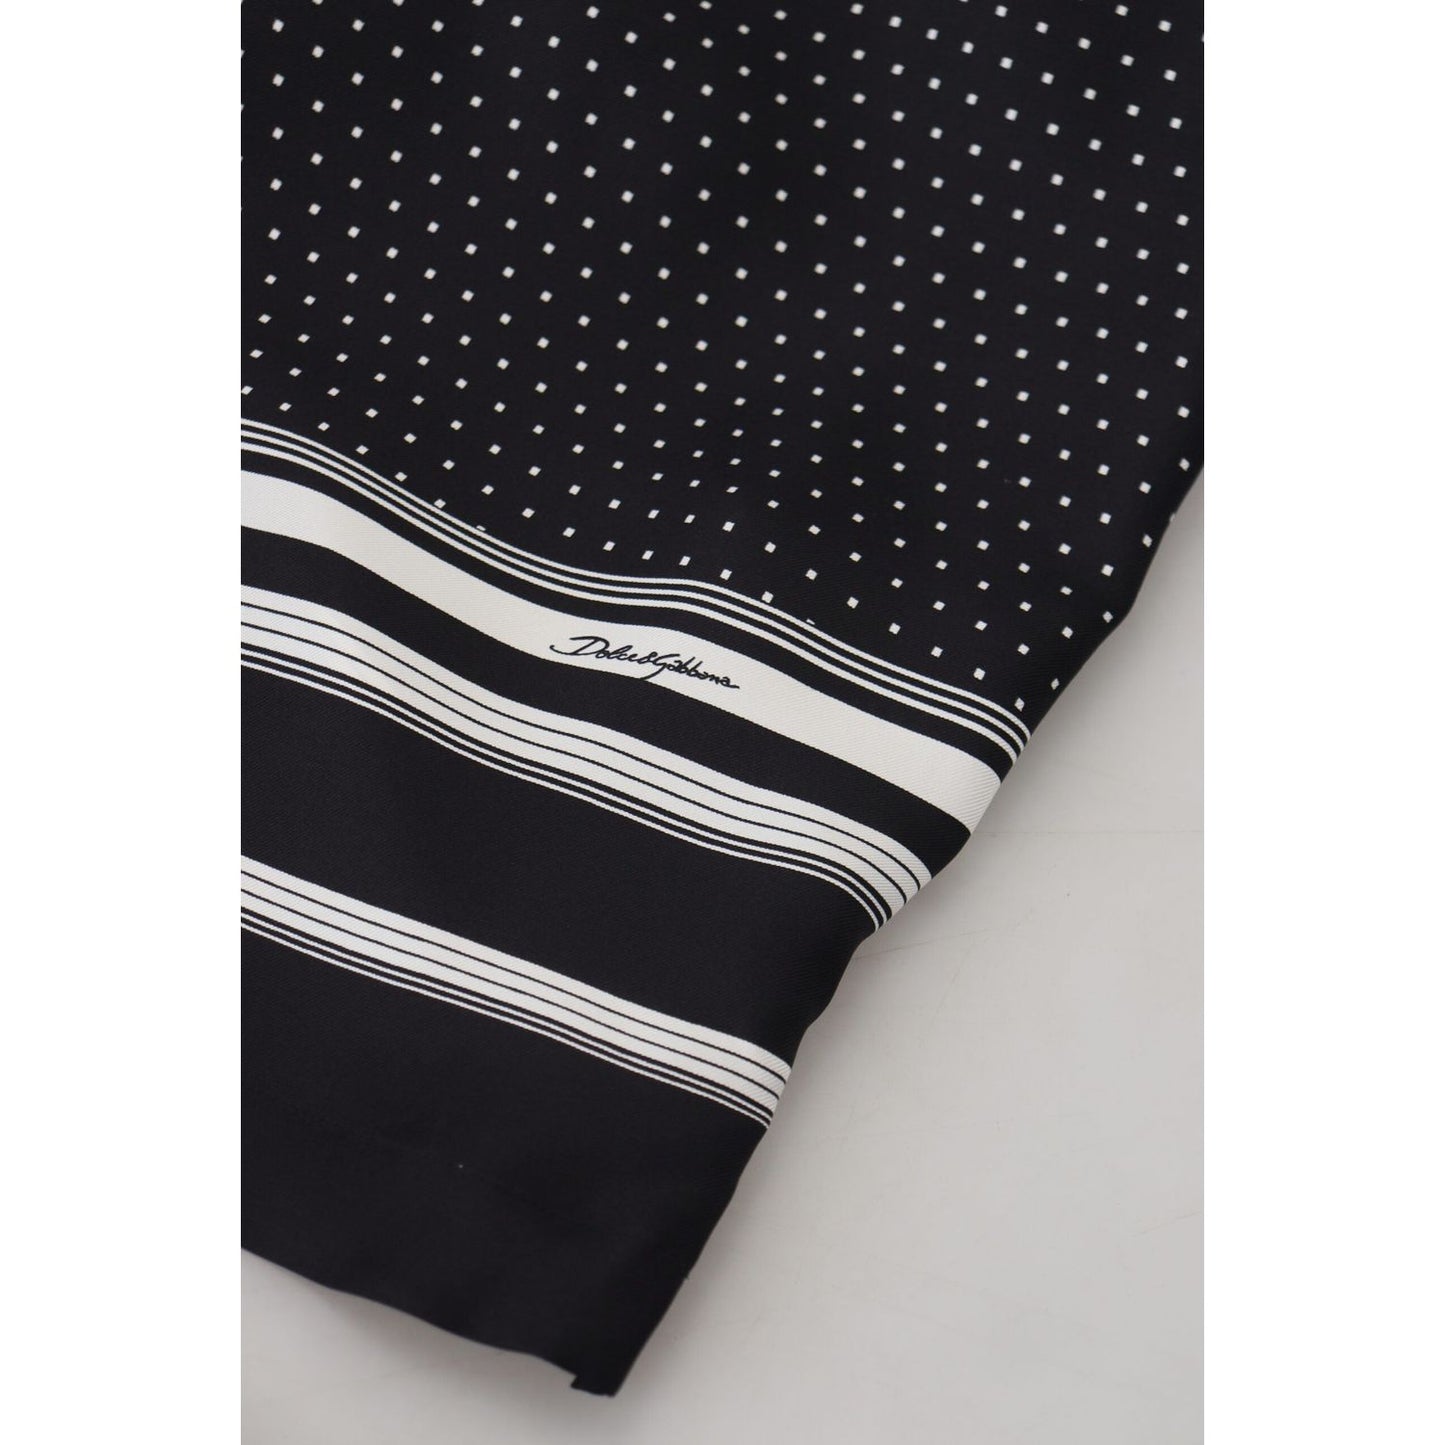 Dolce & Gabbana Elegant Silk Polka Dot Pajama Top black-white-polka-dots-men-pajama-silk-top